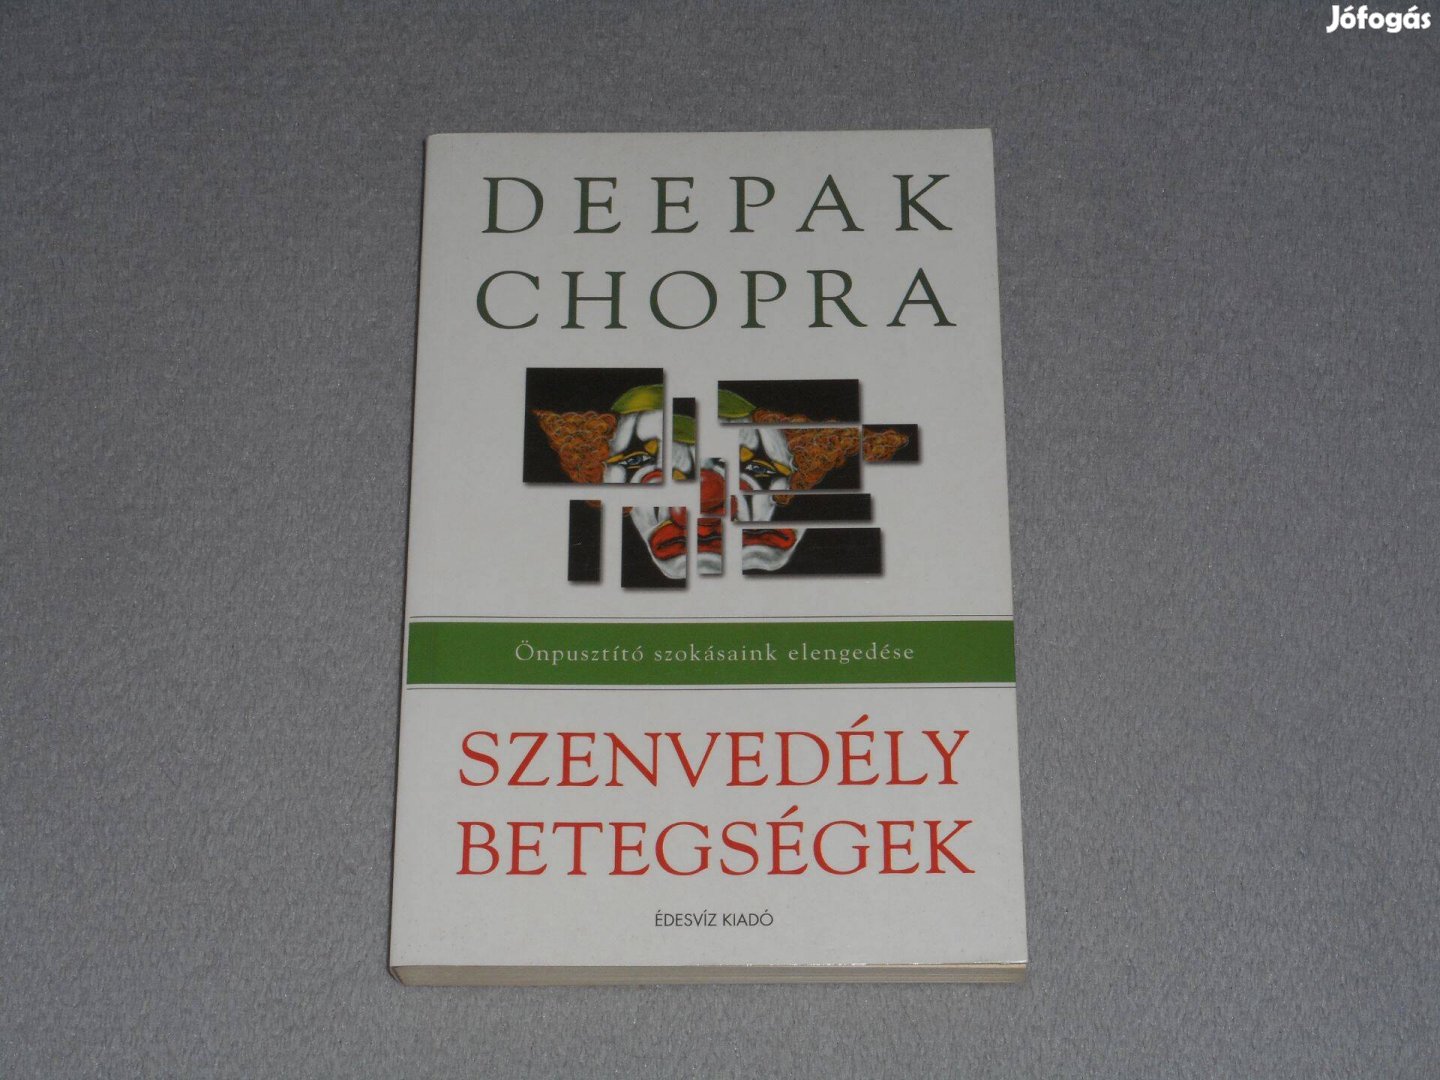 Deepak Chopra Szenvedély betegségek - Önpusztító szokásaink elengedése